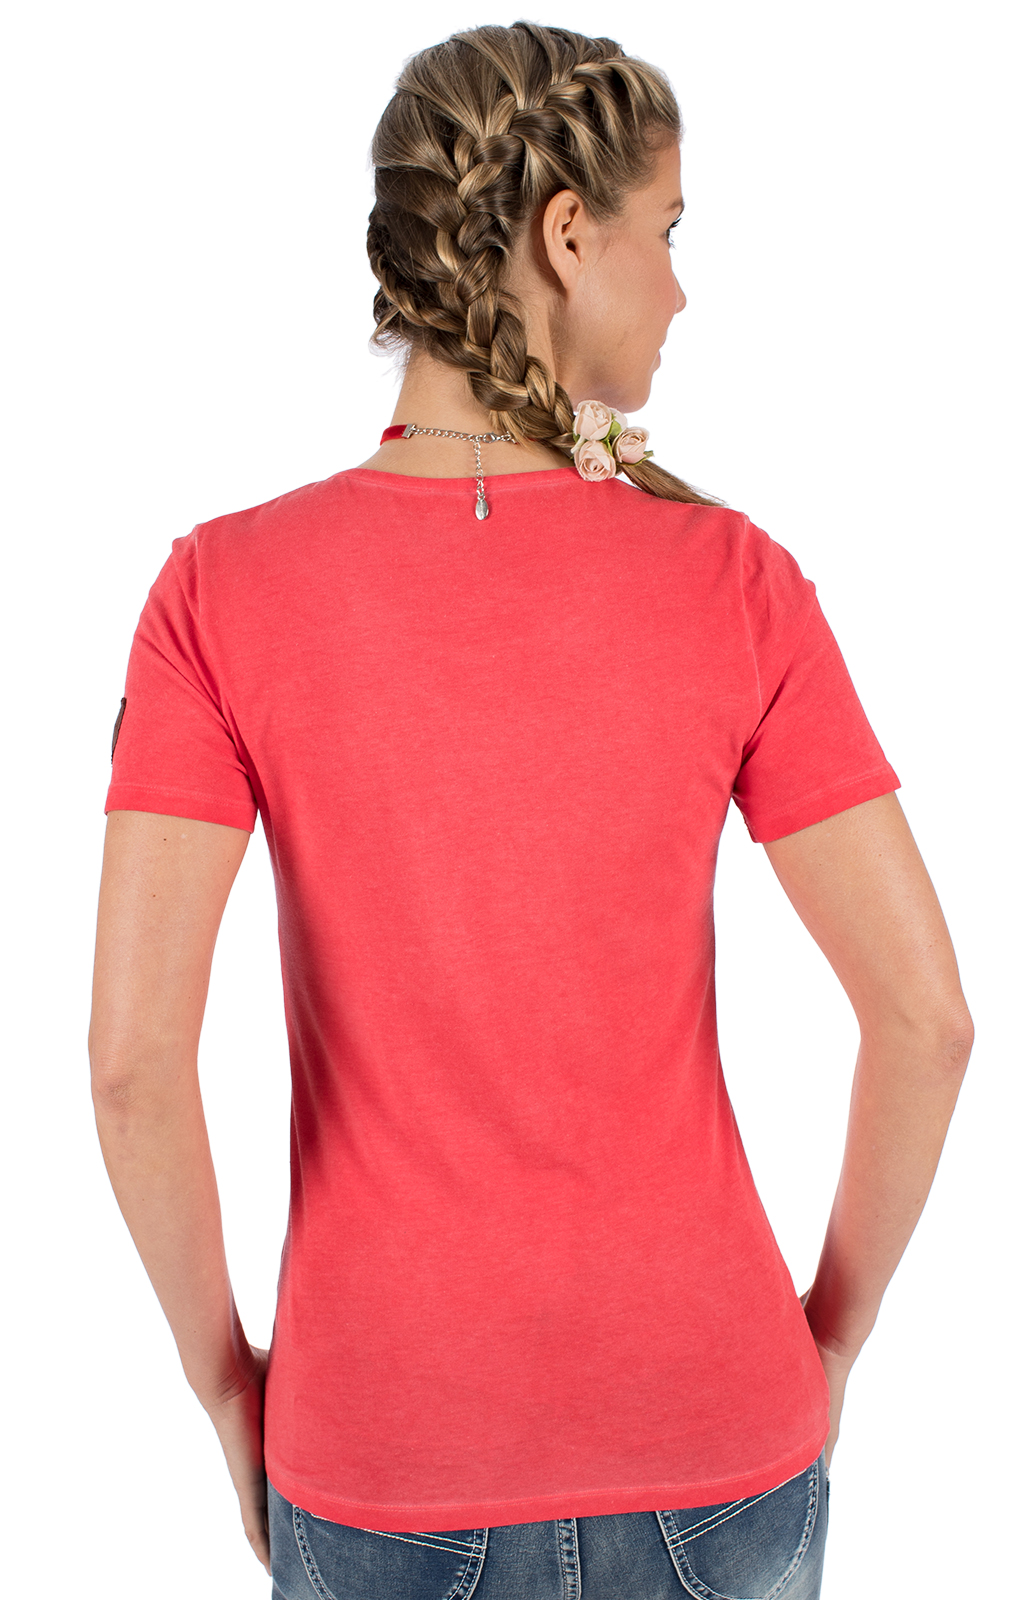 weitere Bilder von Trachten T-Shirt WALLERALM rot